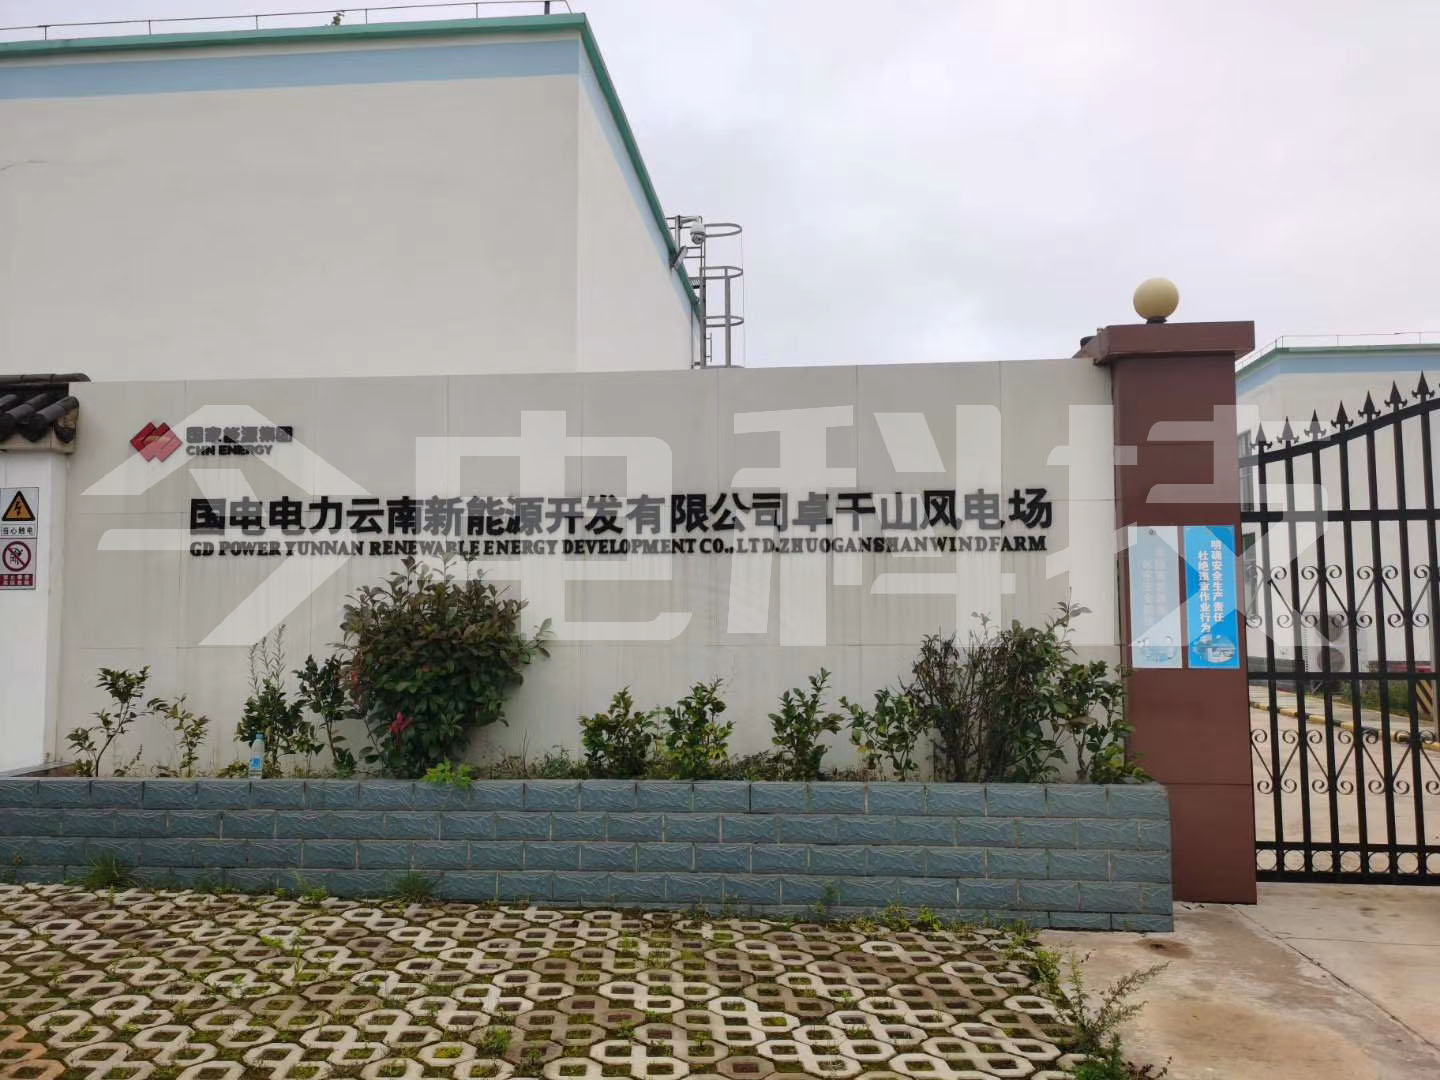 國電電力云南新能源開發有限公司卓干山風電場